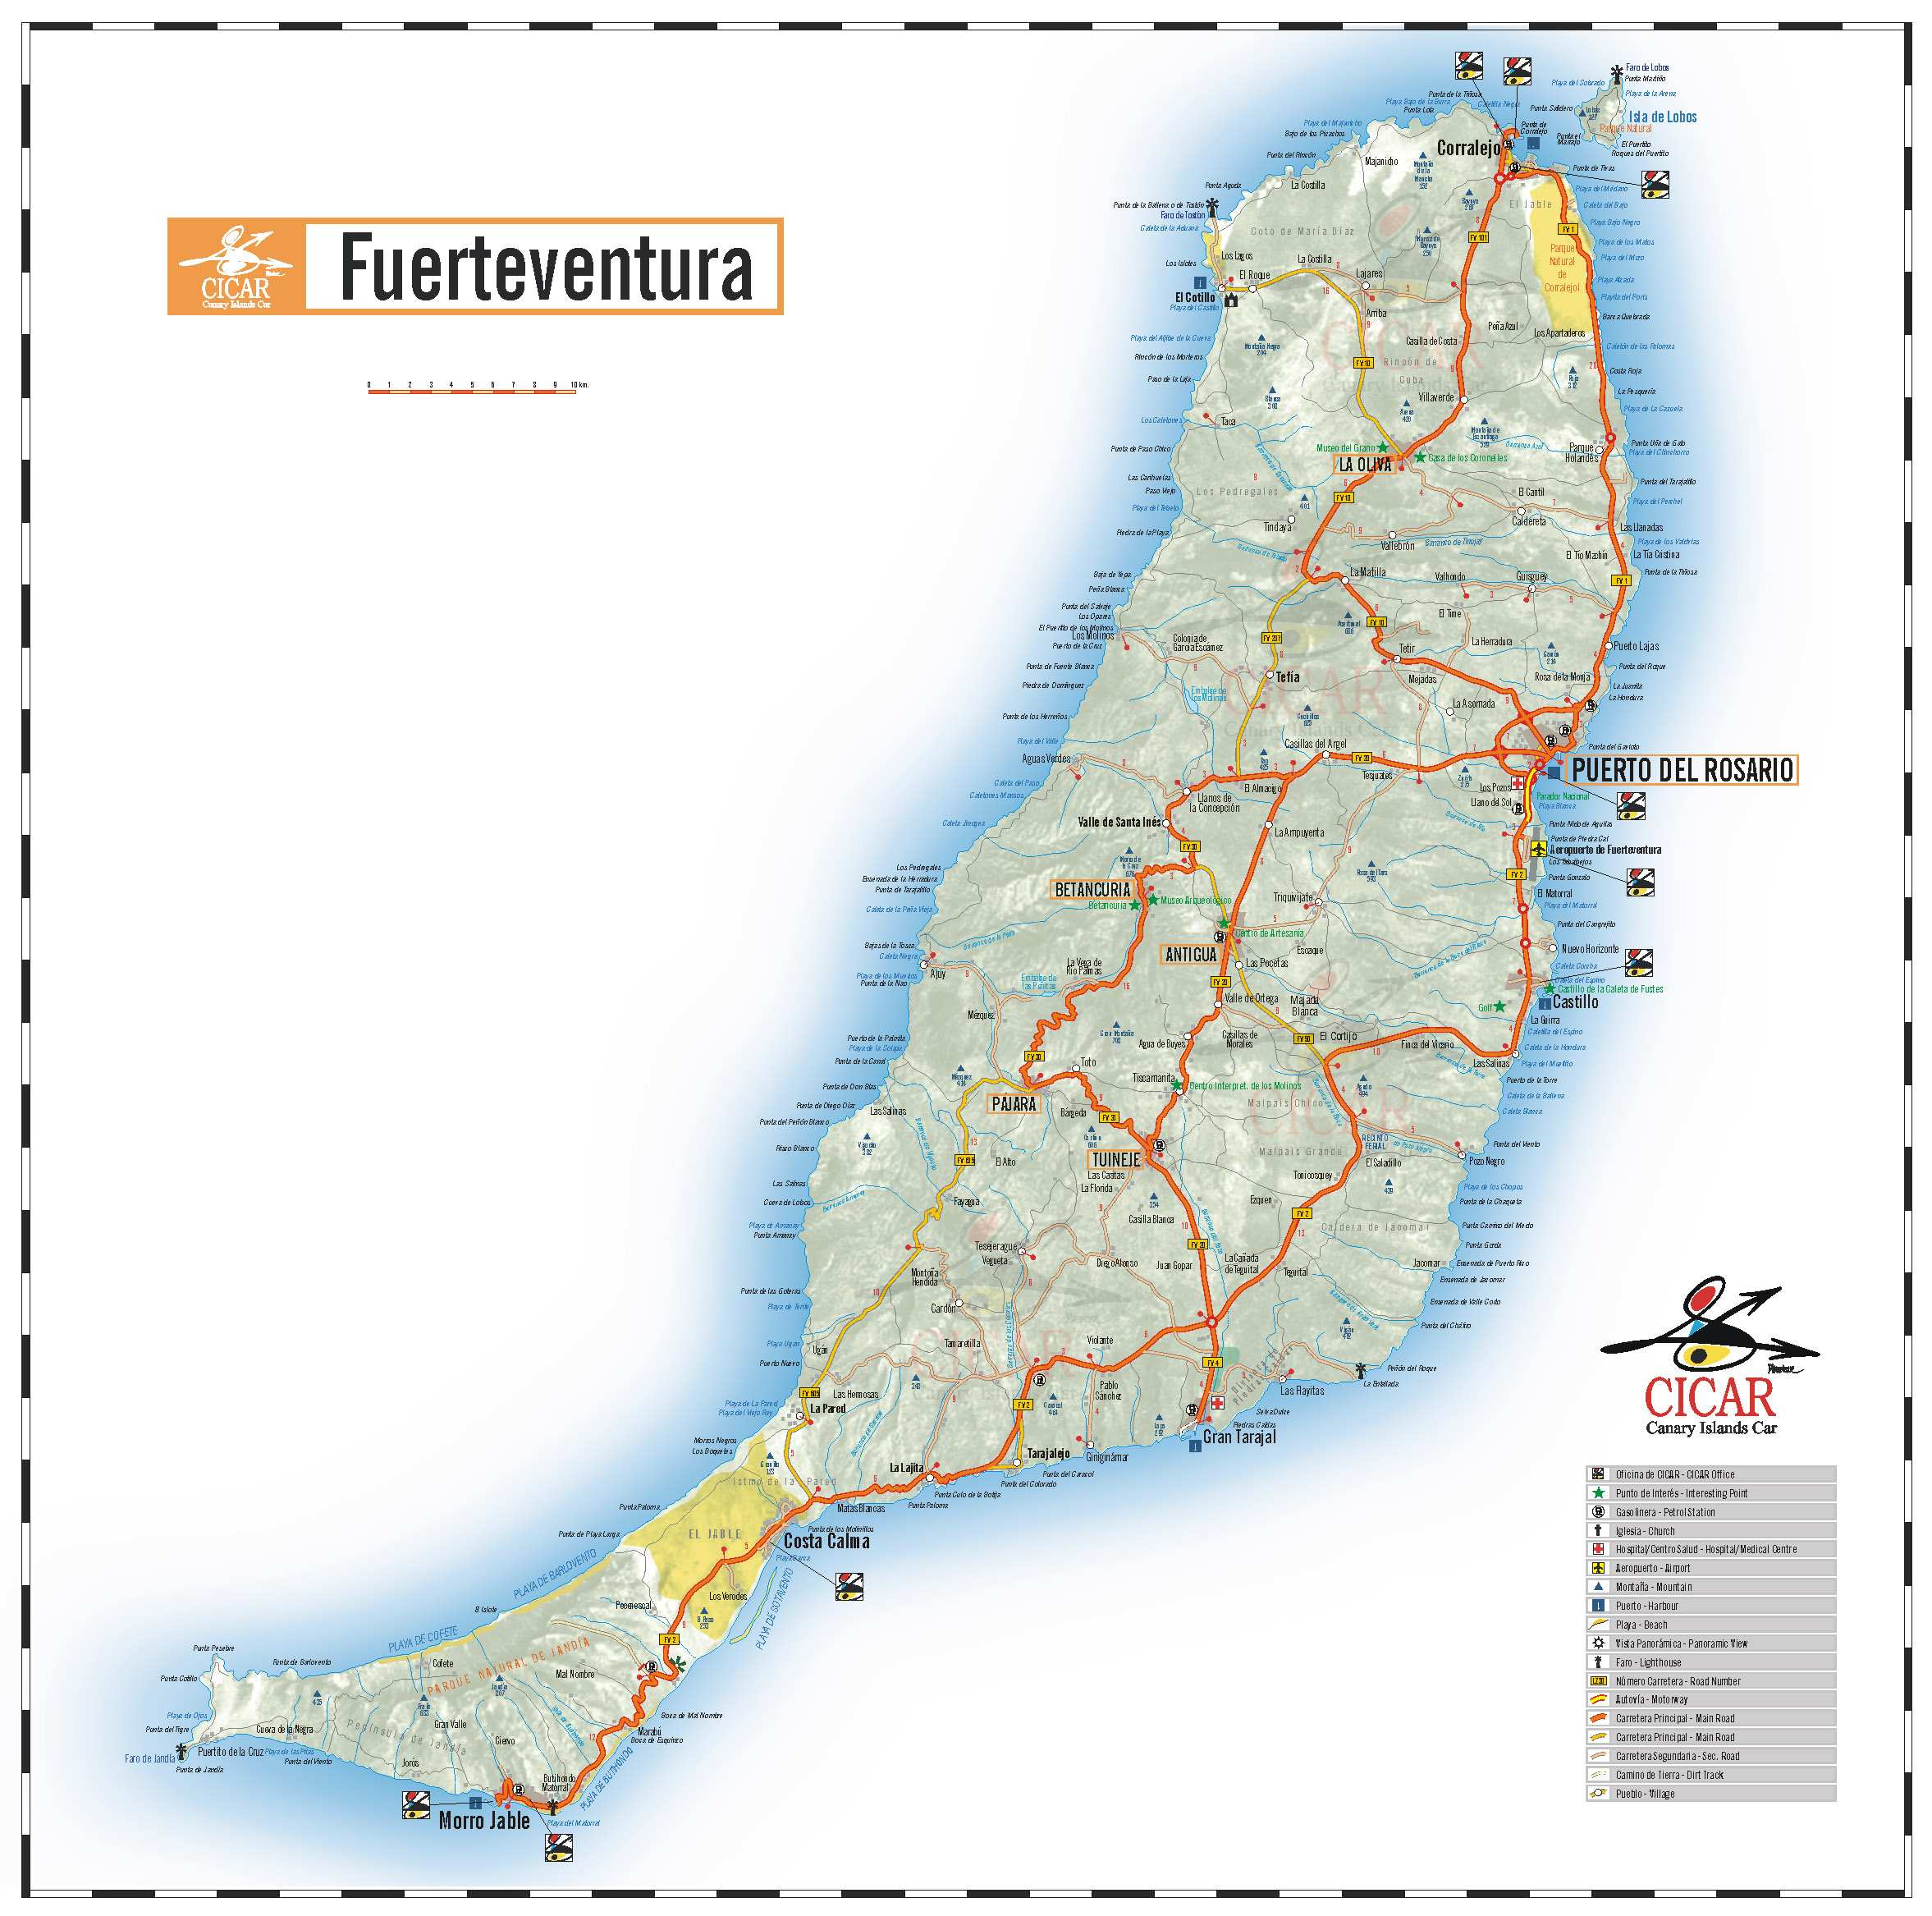 fuerteventura térkép Large Fuerteventura Maps for Free Download and Print | High  fuerteventura térkép